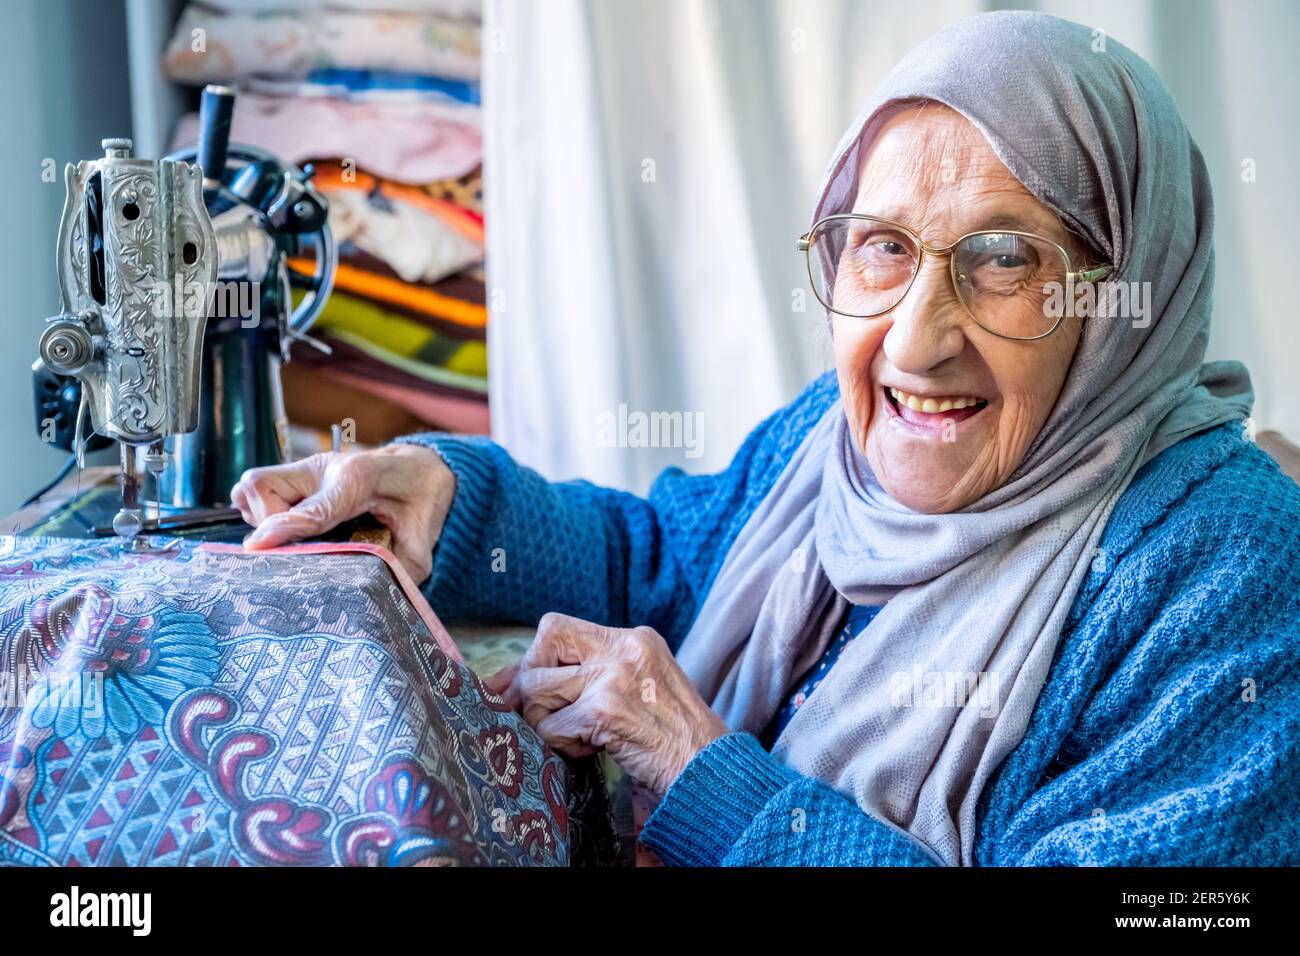 Arabe musulmane femme couture et mesure des longueurs avec son ruban Photo  Stock - Alamy